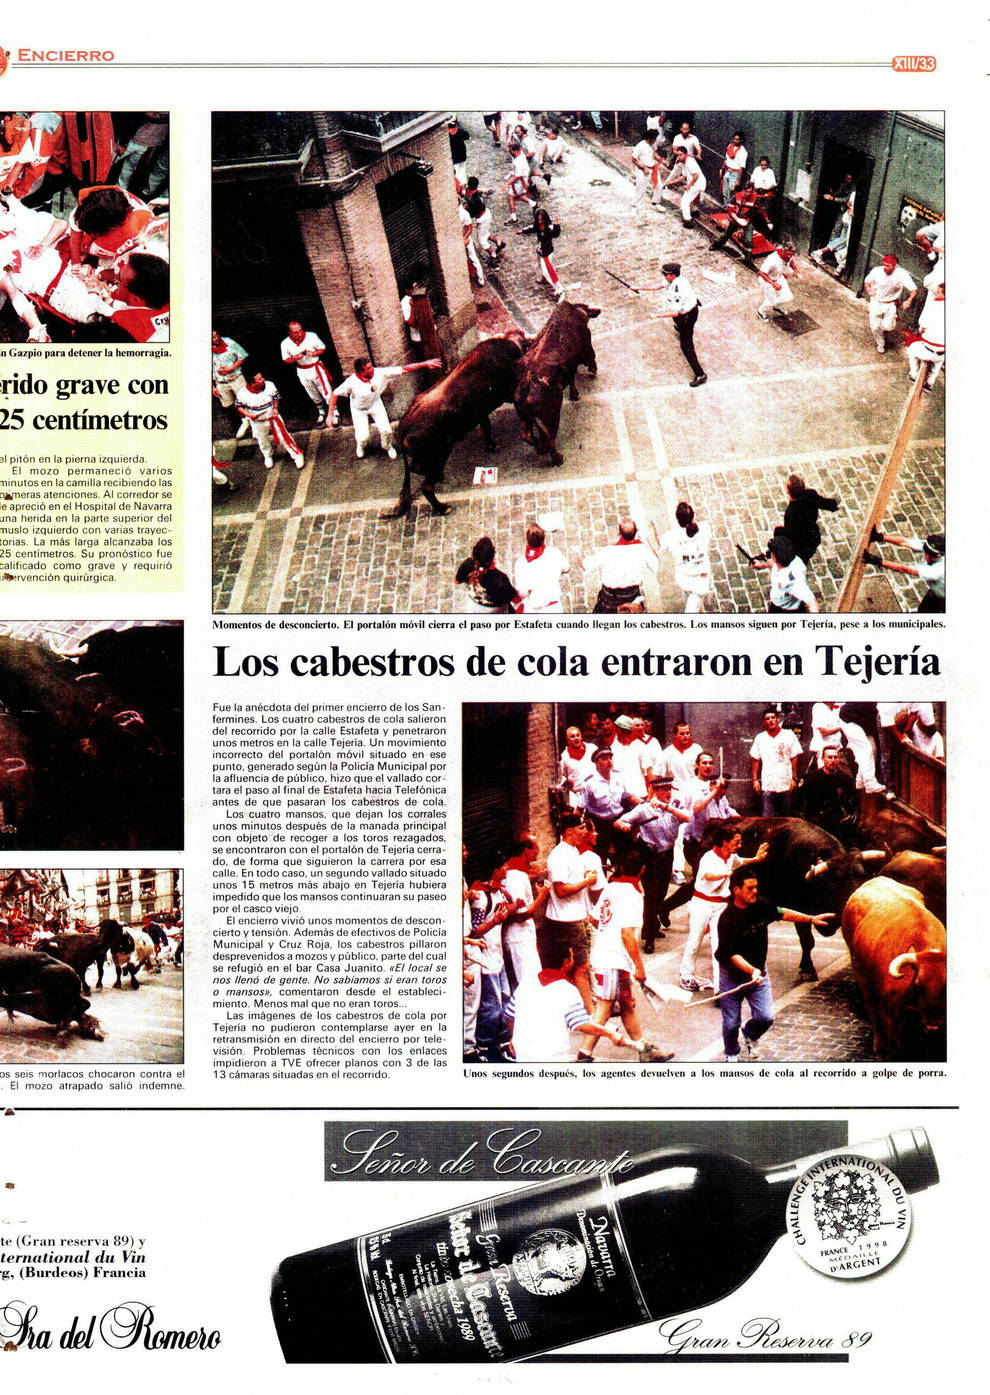 1998. Cuatro mansos huidos en el encierro y cinco agentes municipales al rescate